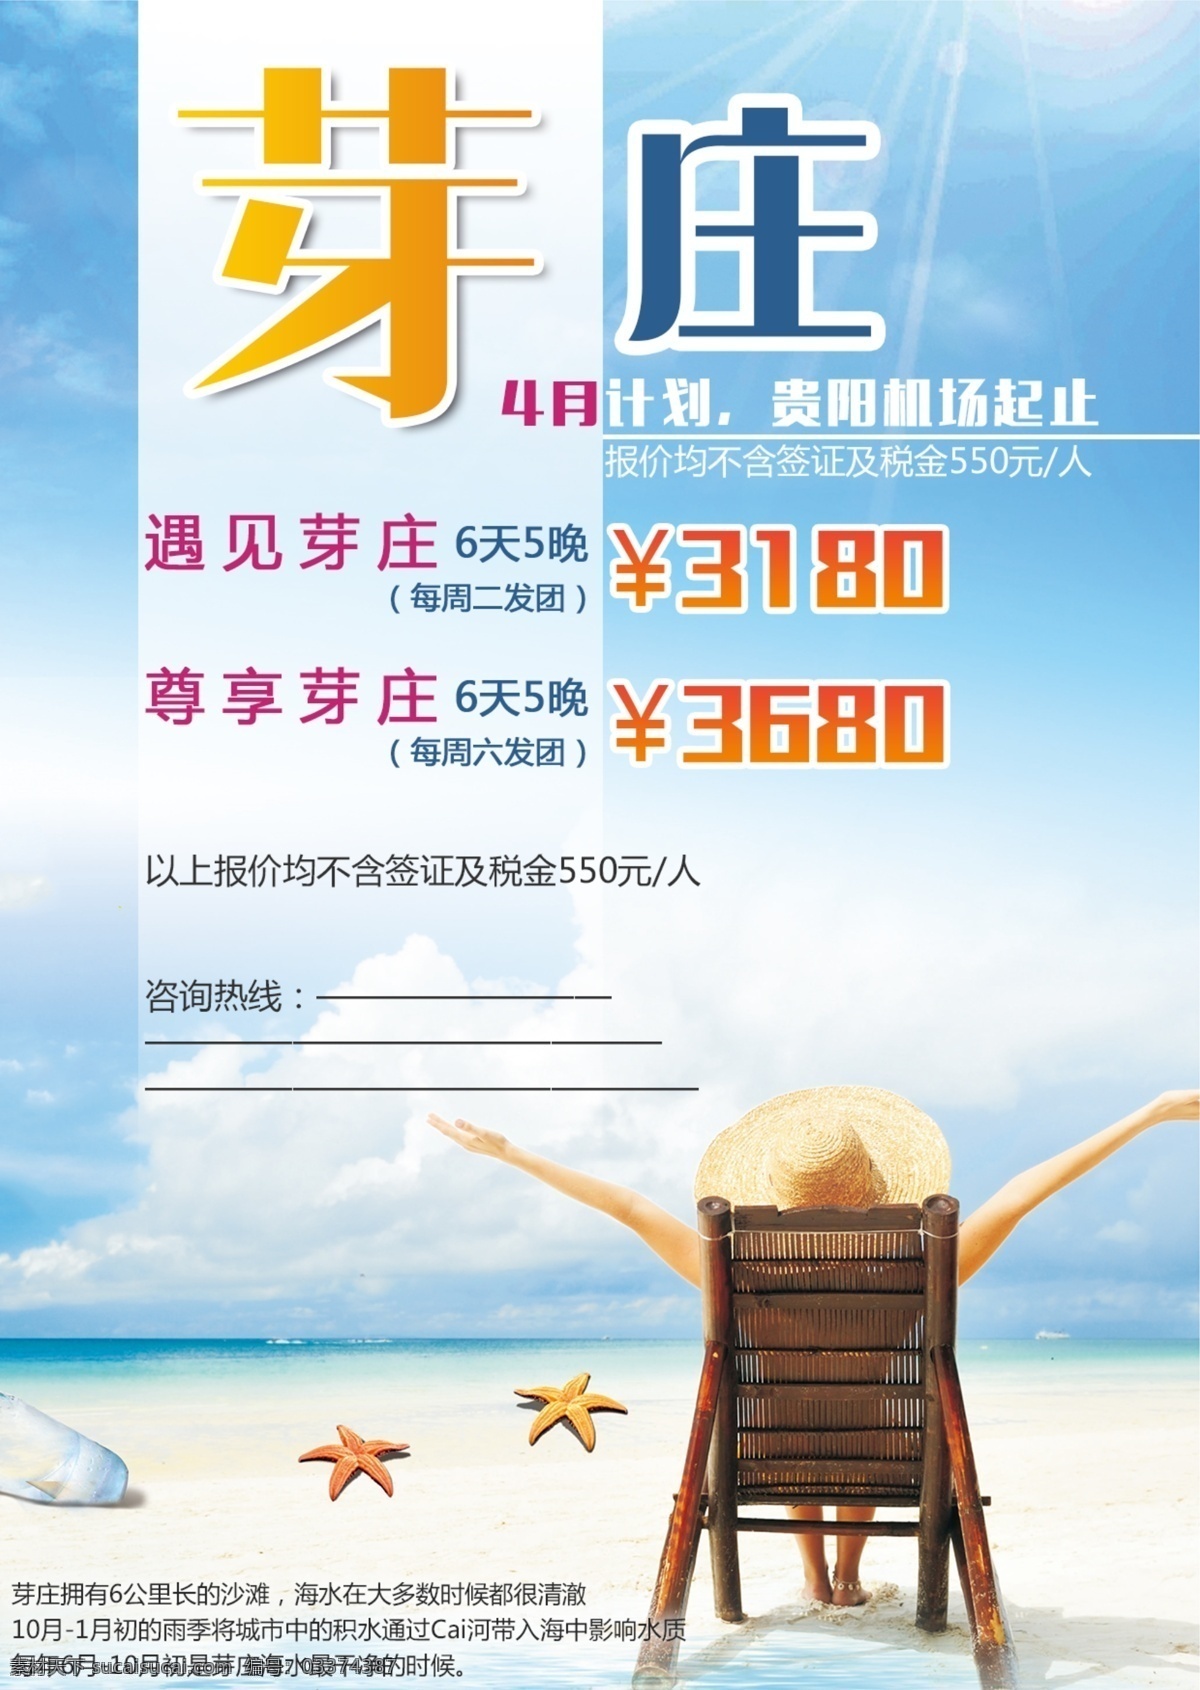 芽庄 旅游产品 广告 越南 旅游广告 海边 沙滩 阳光 美女 旅游